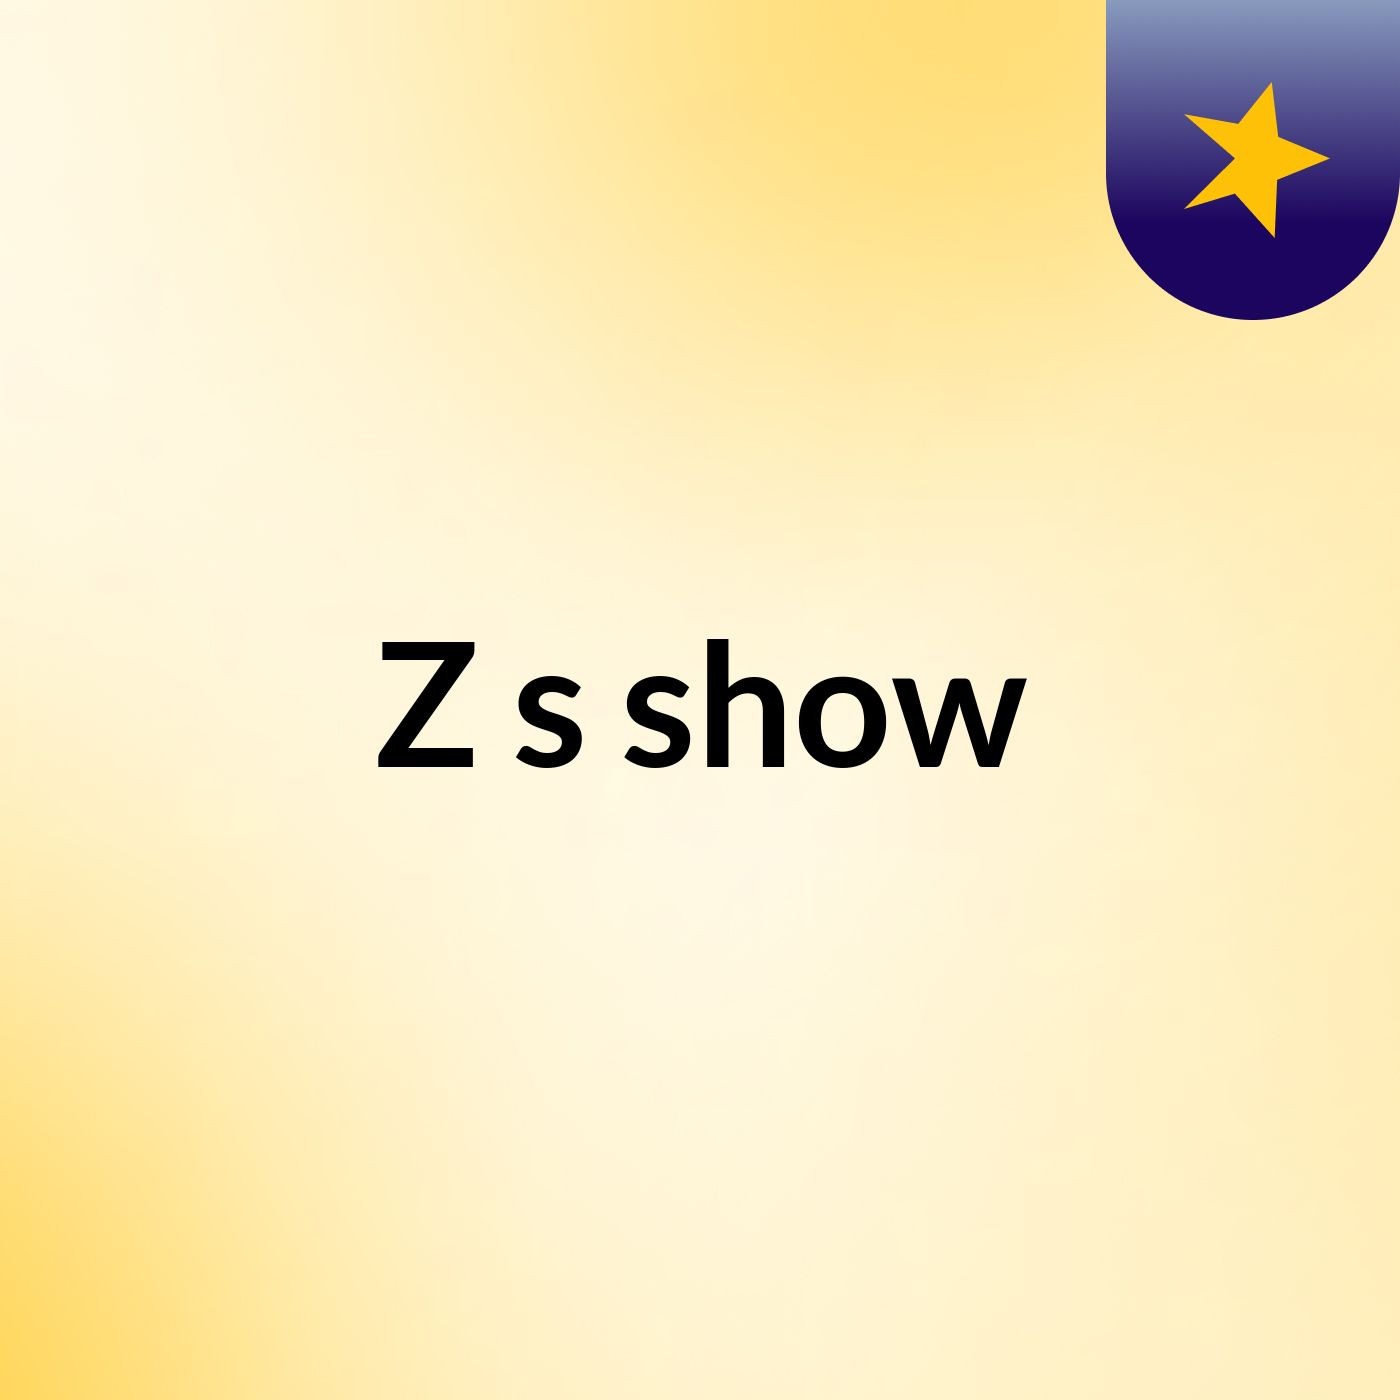 Z's show